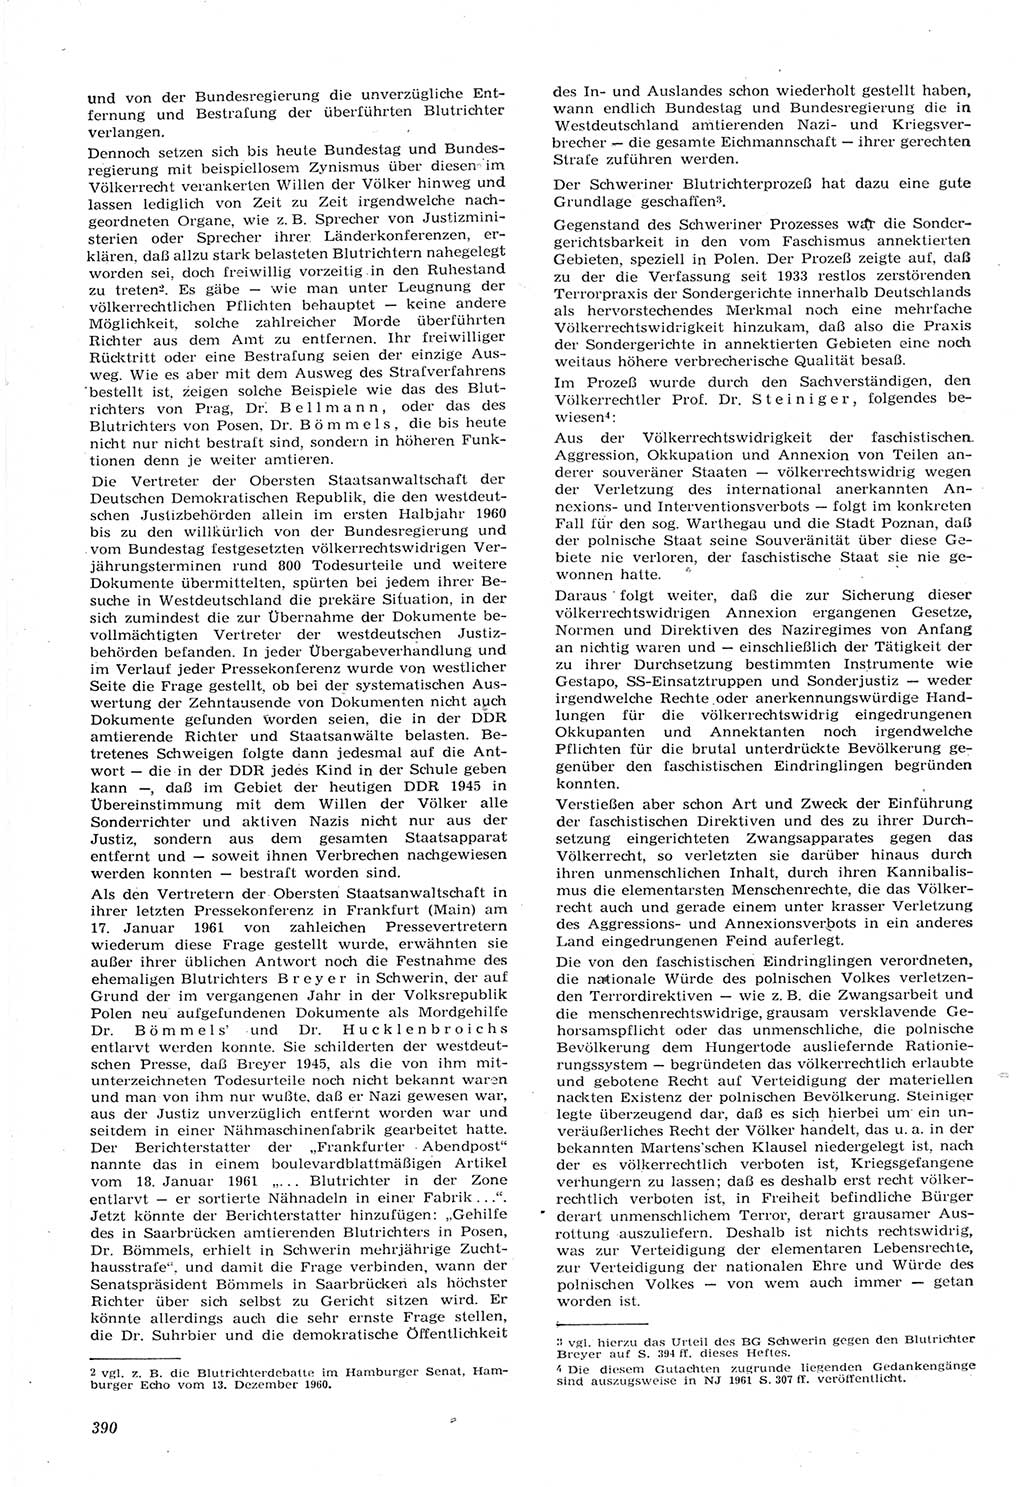 Neue Justiz (NJ), Zeitschrift für Recht und Rechtswissenschaft [Deutsche Demokratische Republik (DDR)], 15. Jahrgang 1961, Seite 390 (NJ DDR 1961, S. 390)